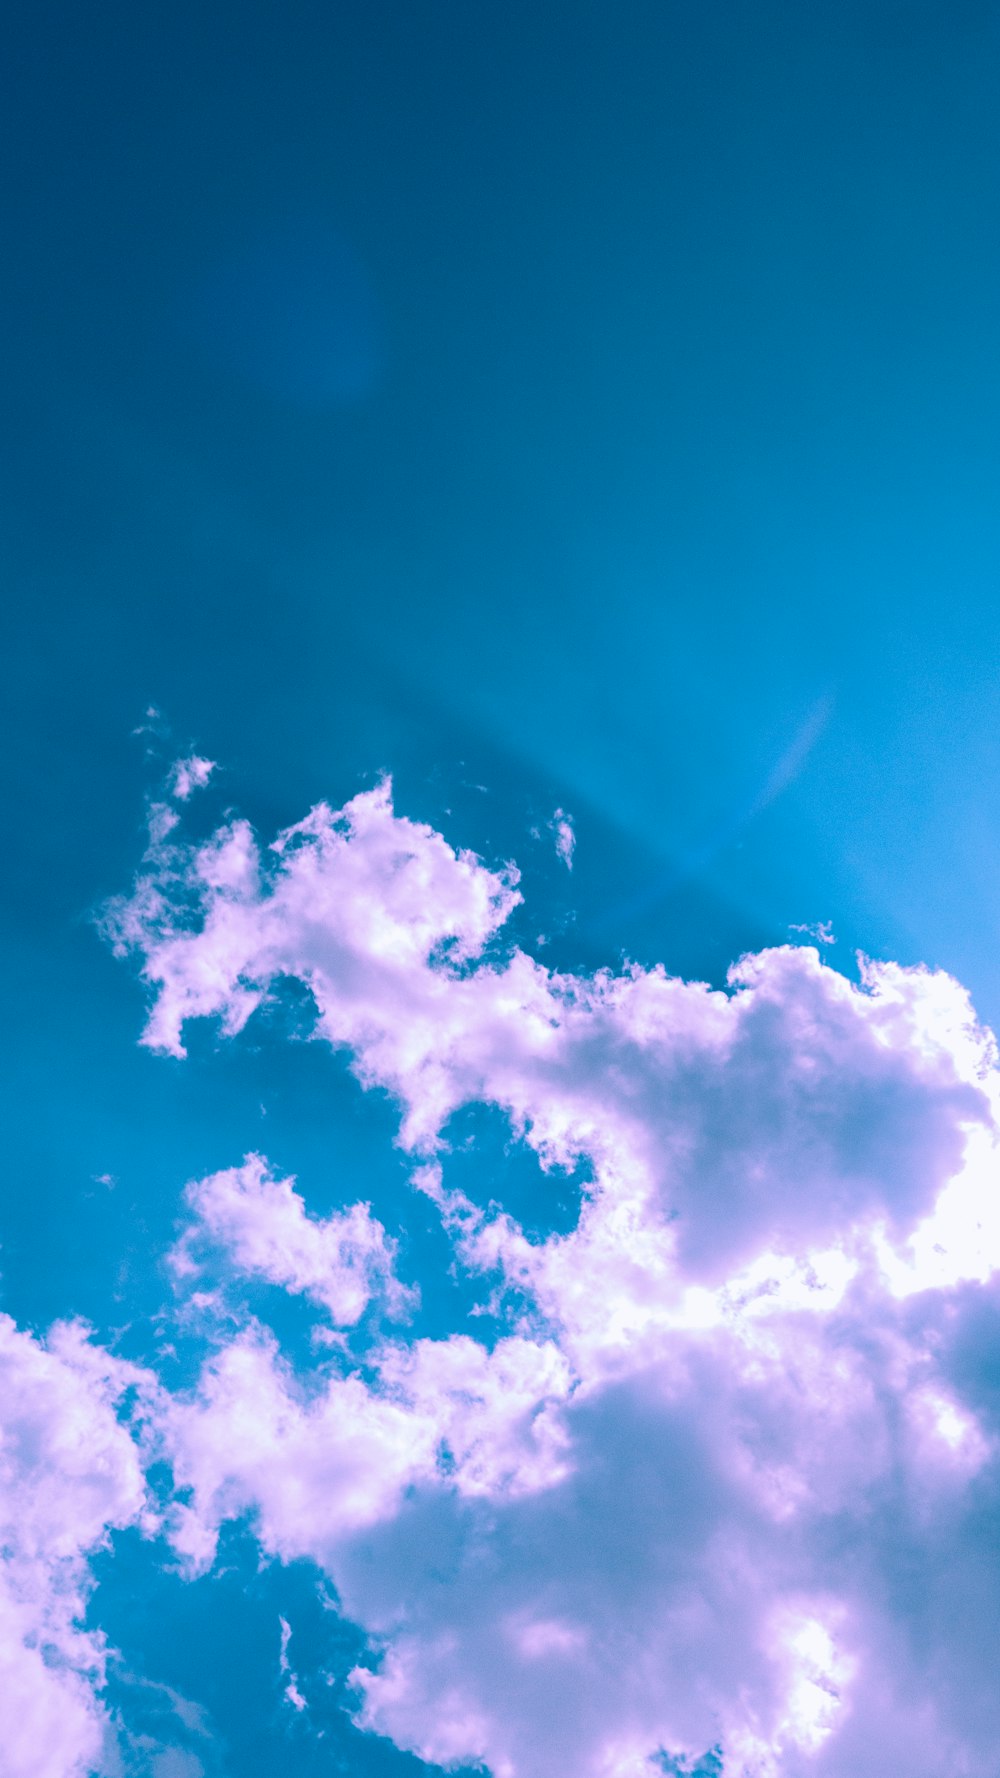 Ein Flugzeug fliegt durch einen blauen Himmel mit Wolken